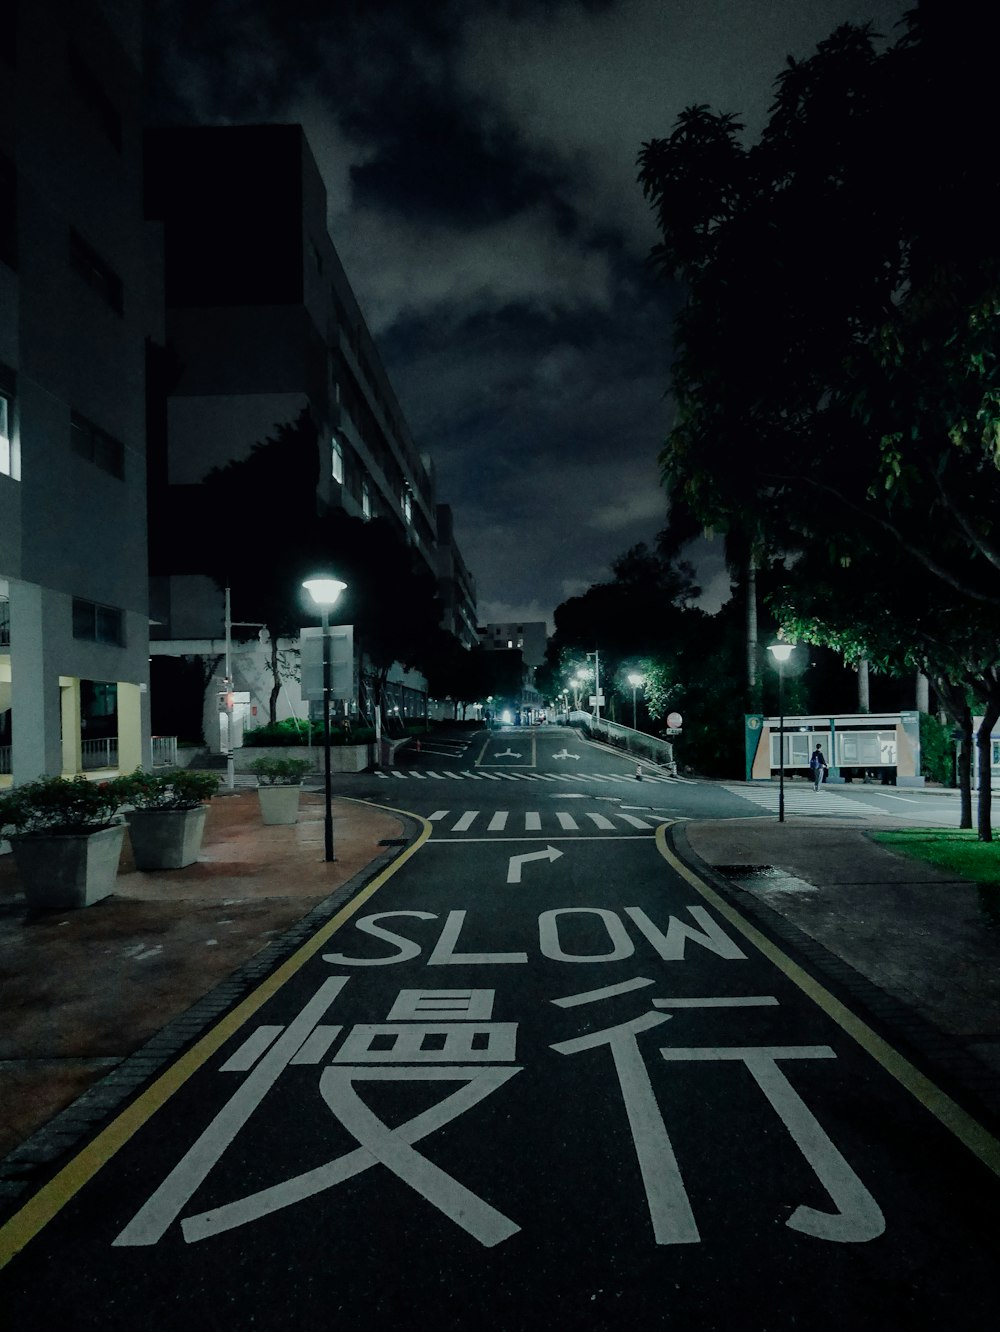 Eine Straße bei Nacht mit einem Schild auf der Straße